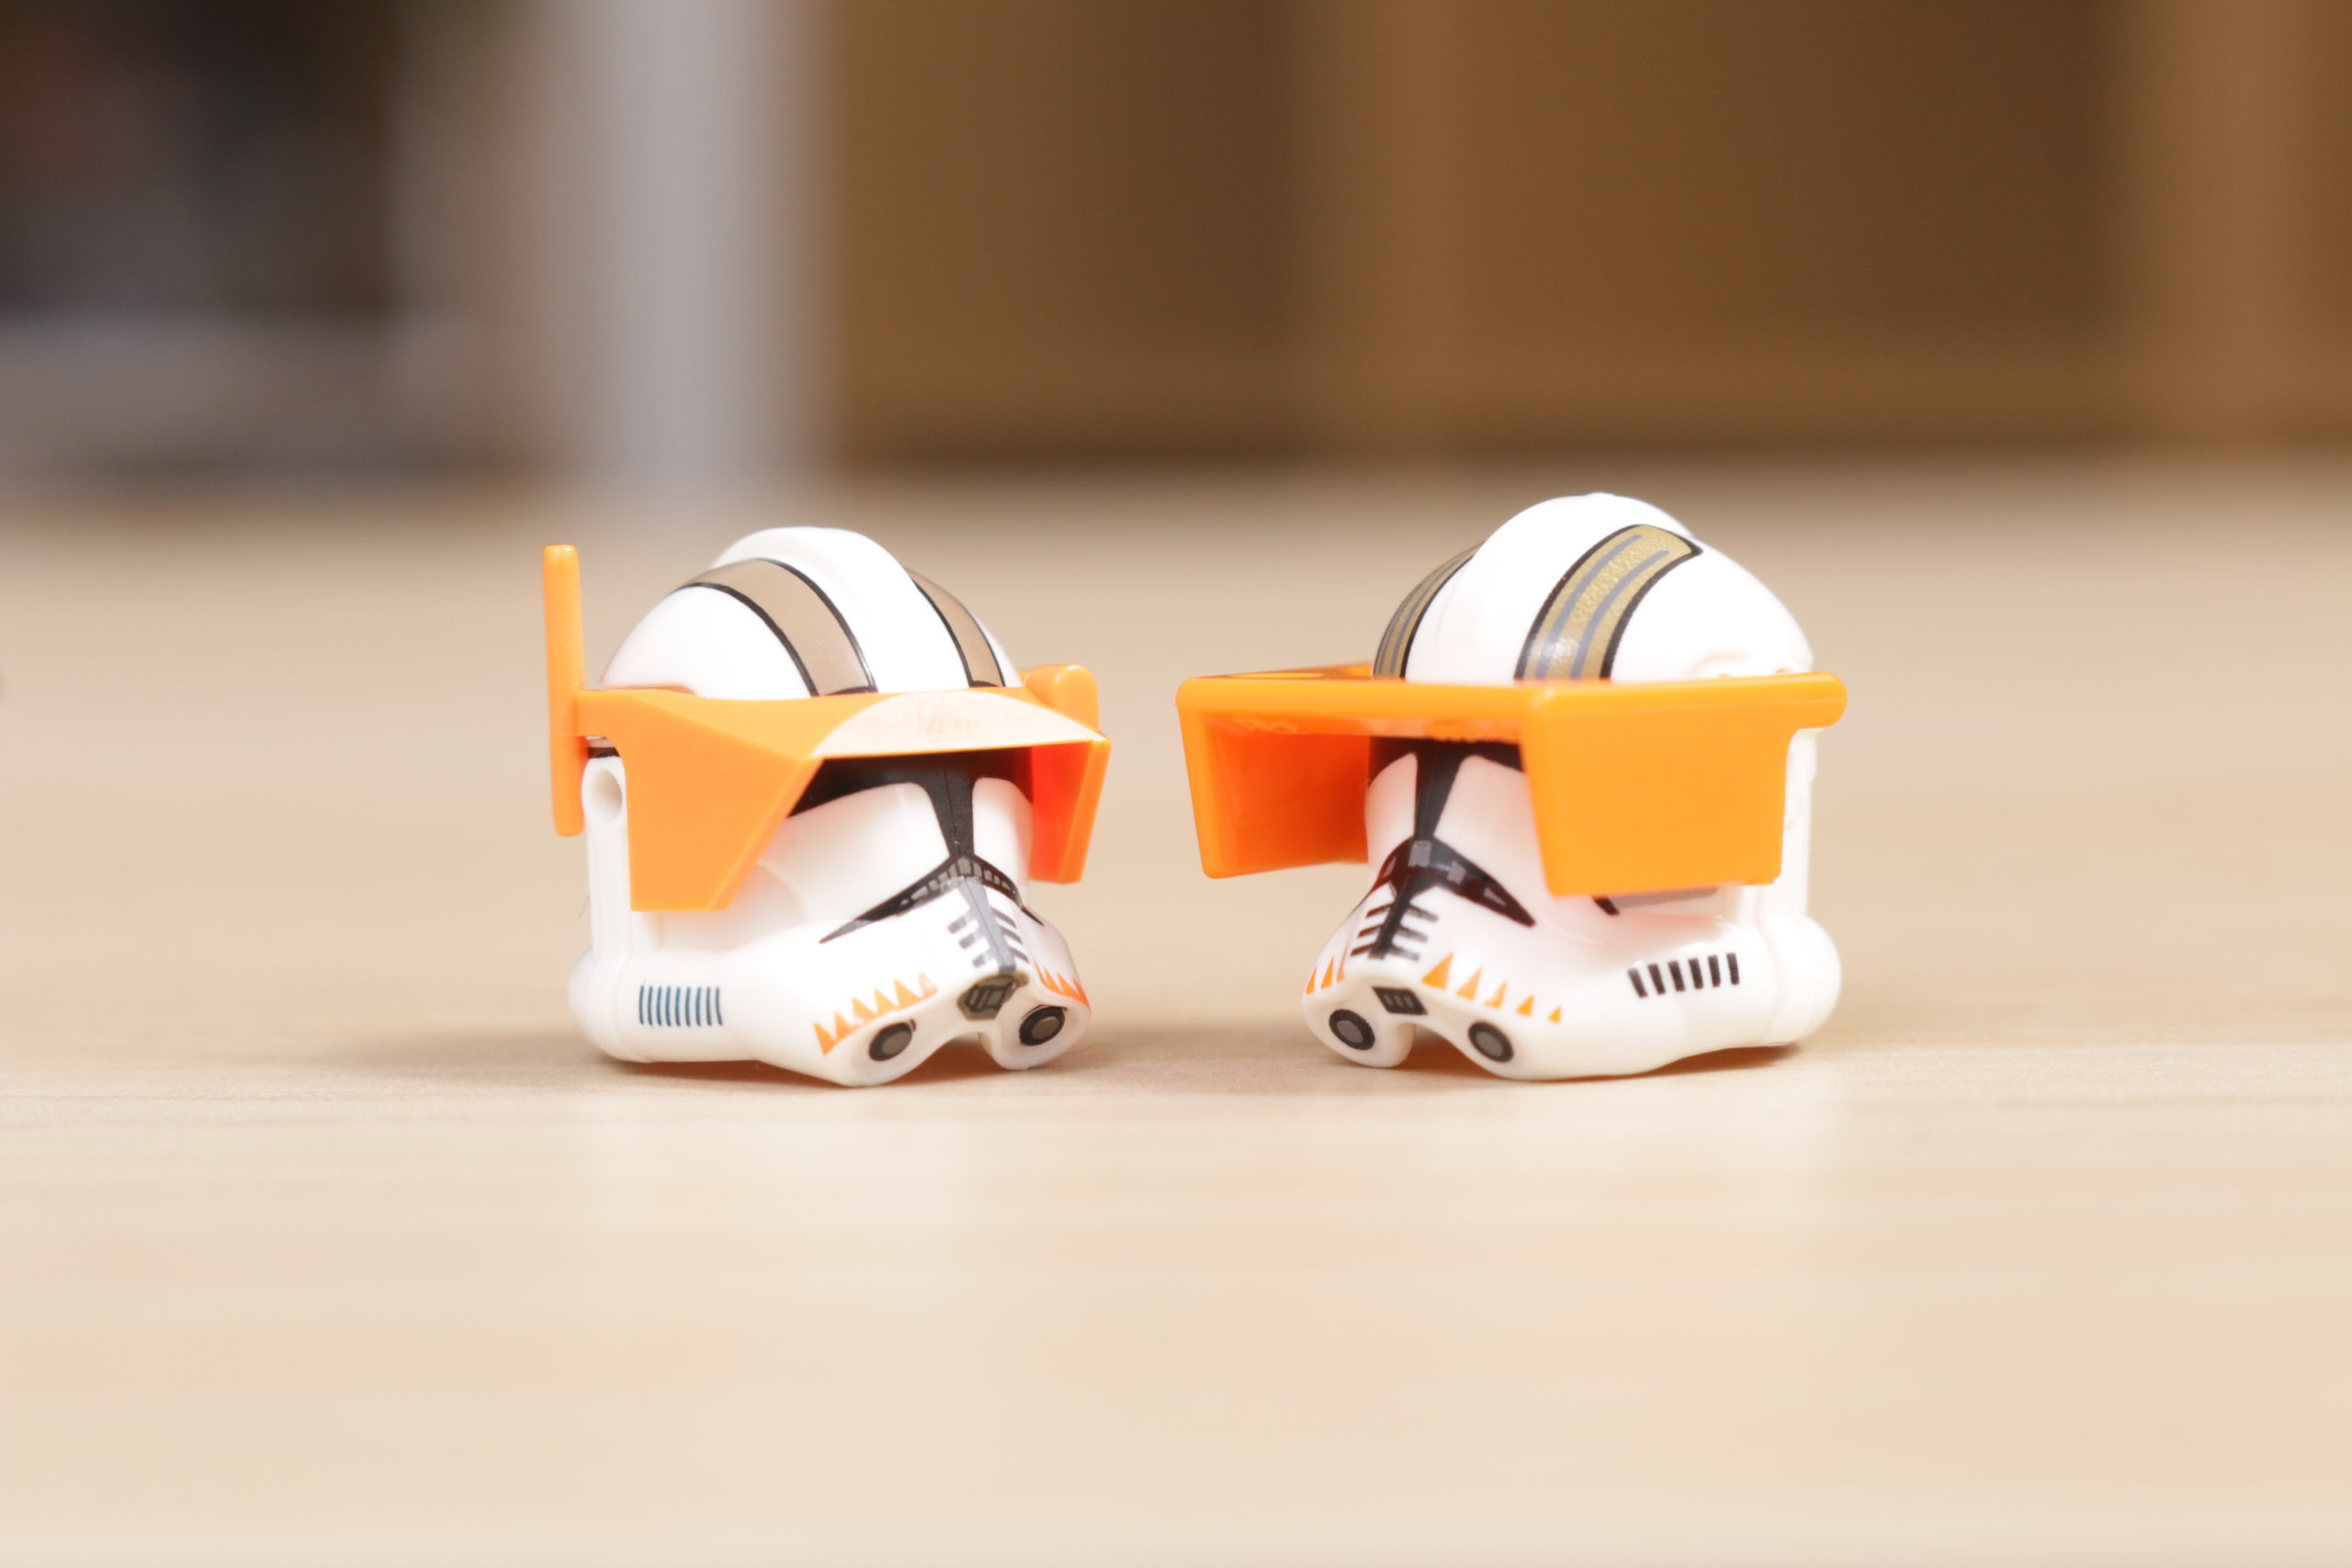 Le LEGO Star Wars Commandant Cody figurine que nous méritons